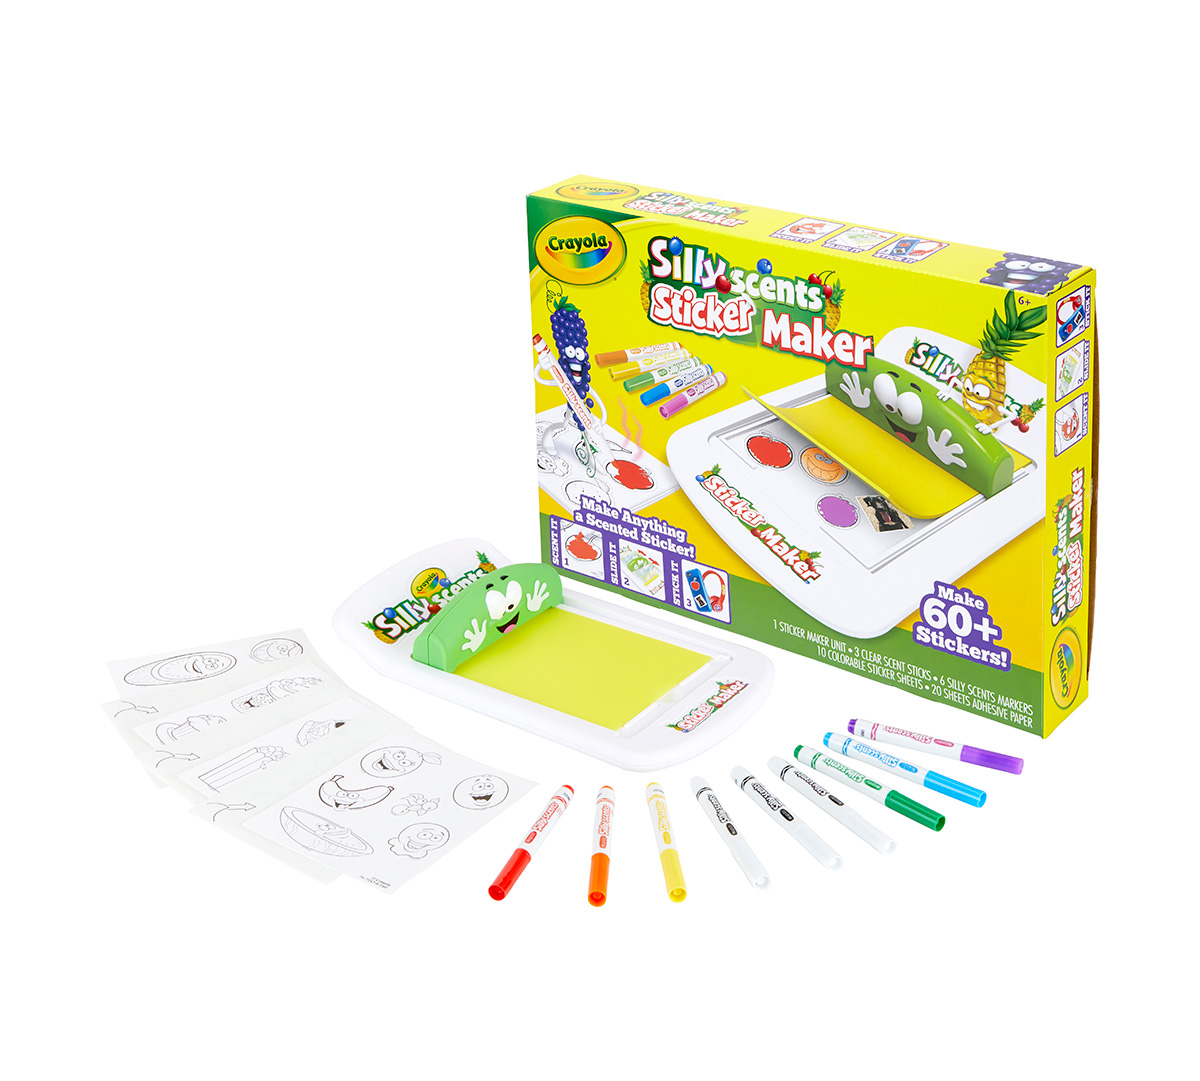 Download Crayola Silly Scents Sticker Maker, Kids Gift | Crayola ...